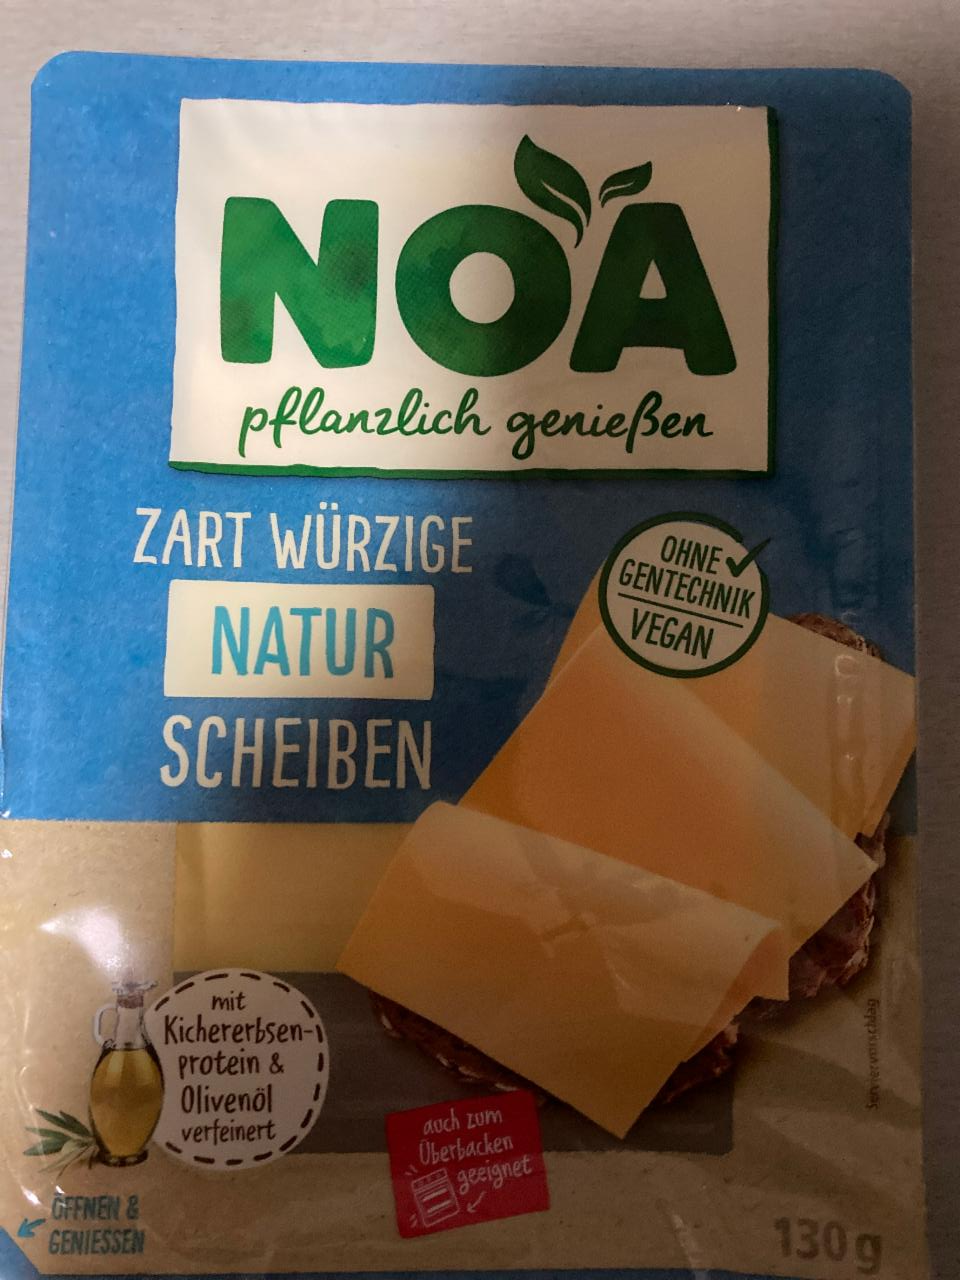 Fotografie - Zart Würzige Natur Scheiben Noa